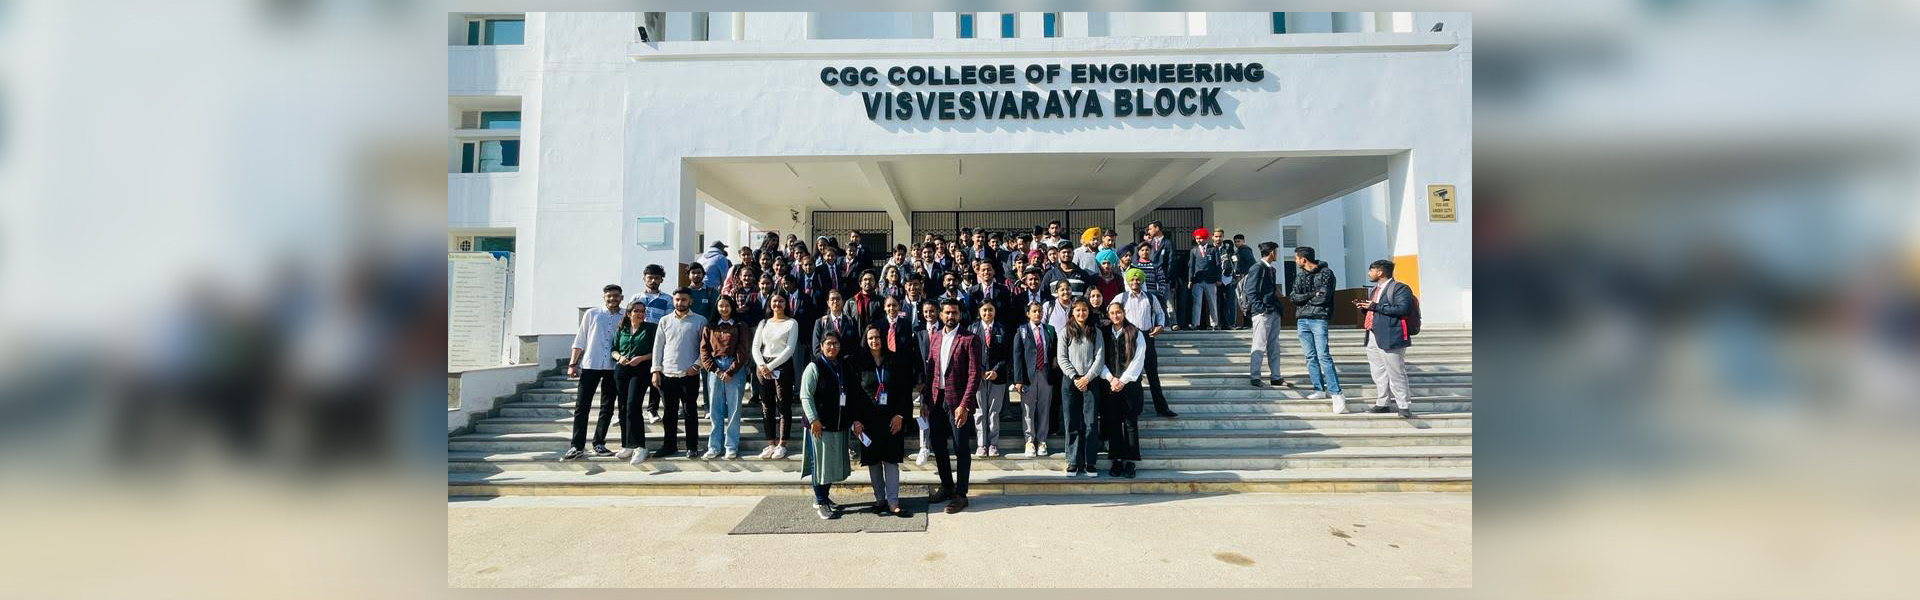 Industrial visit to Virtualsoft Technolgies Pvt. Ltd., Chandigarh 